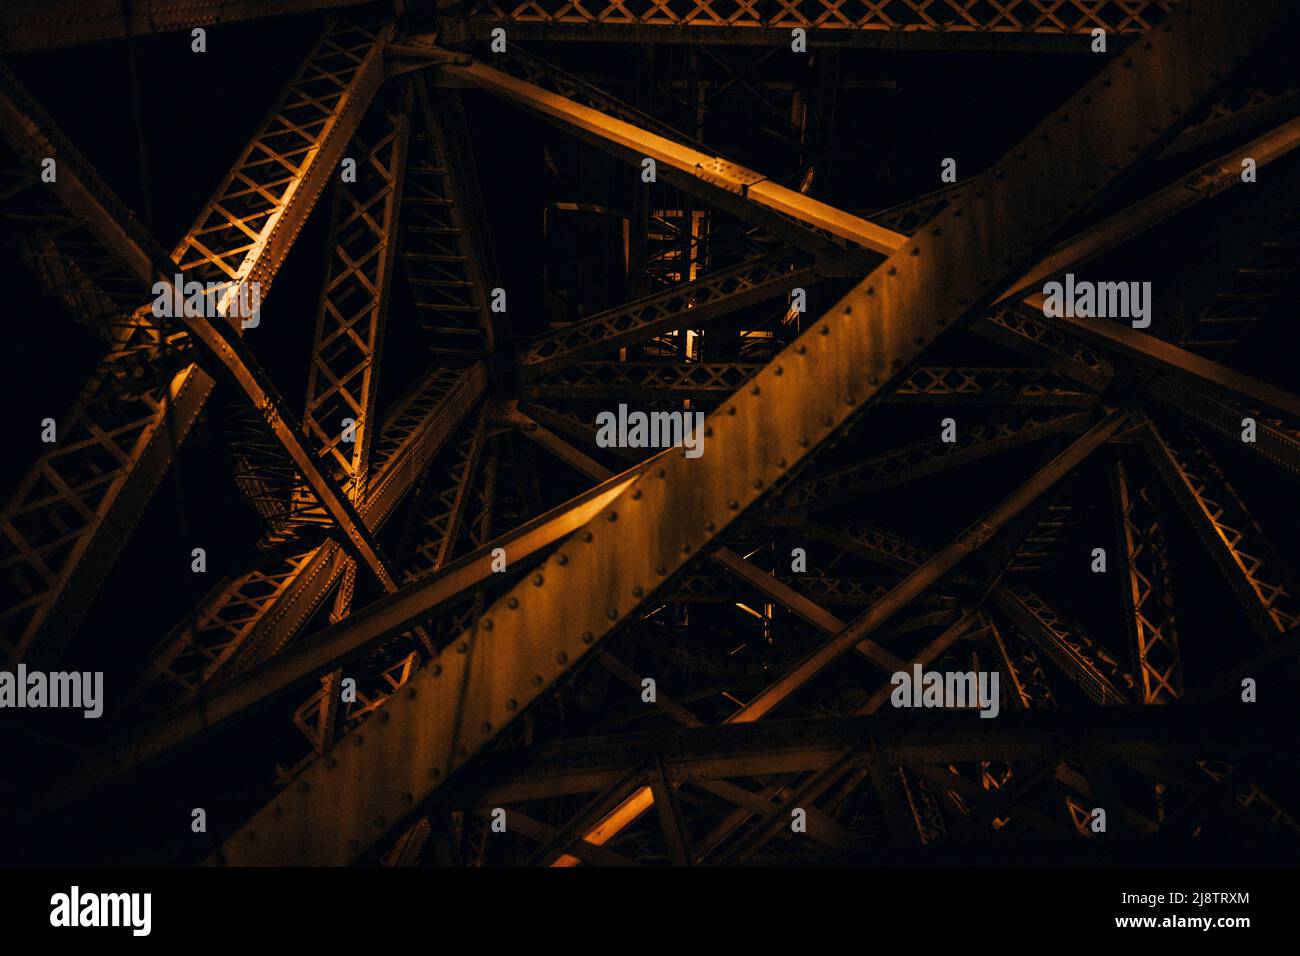 Porto, Portogallo, 10.04.22: Die Unterkonstruktion mit den Stahlträgern der Brücke Dom Luis im Lampenlicht. Foto: Presepfoto Mika Volkmann Foto Stock